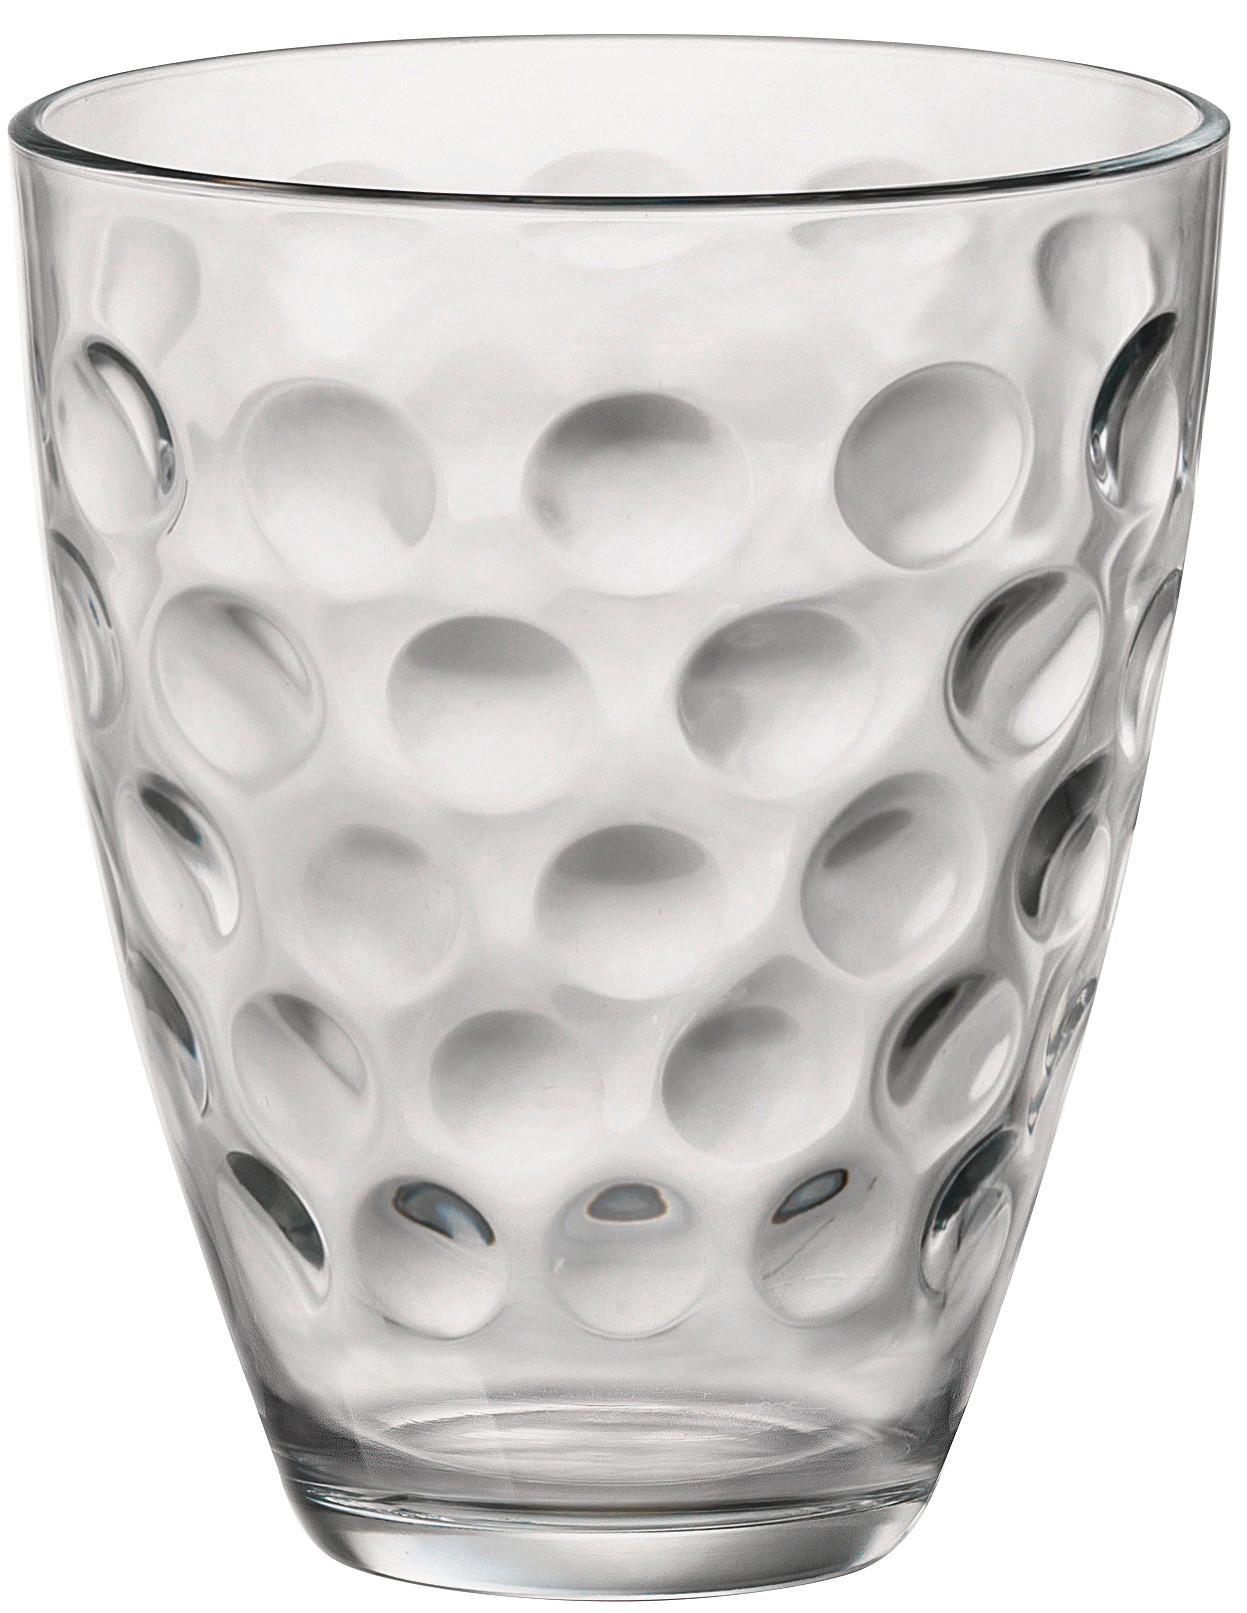 Gläserset Dots ca. 390ml, 6-teilig - Klar, Glas (17,0/25,7/10,90cm) - Modern Living